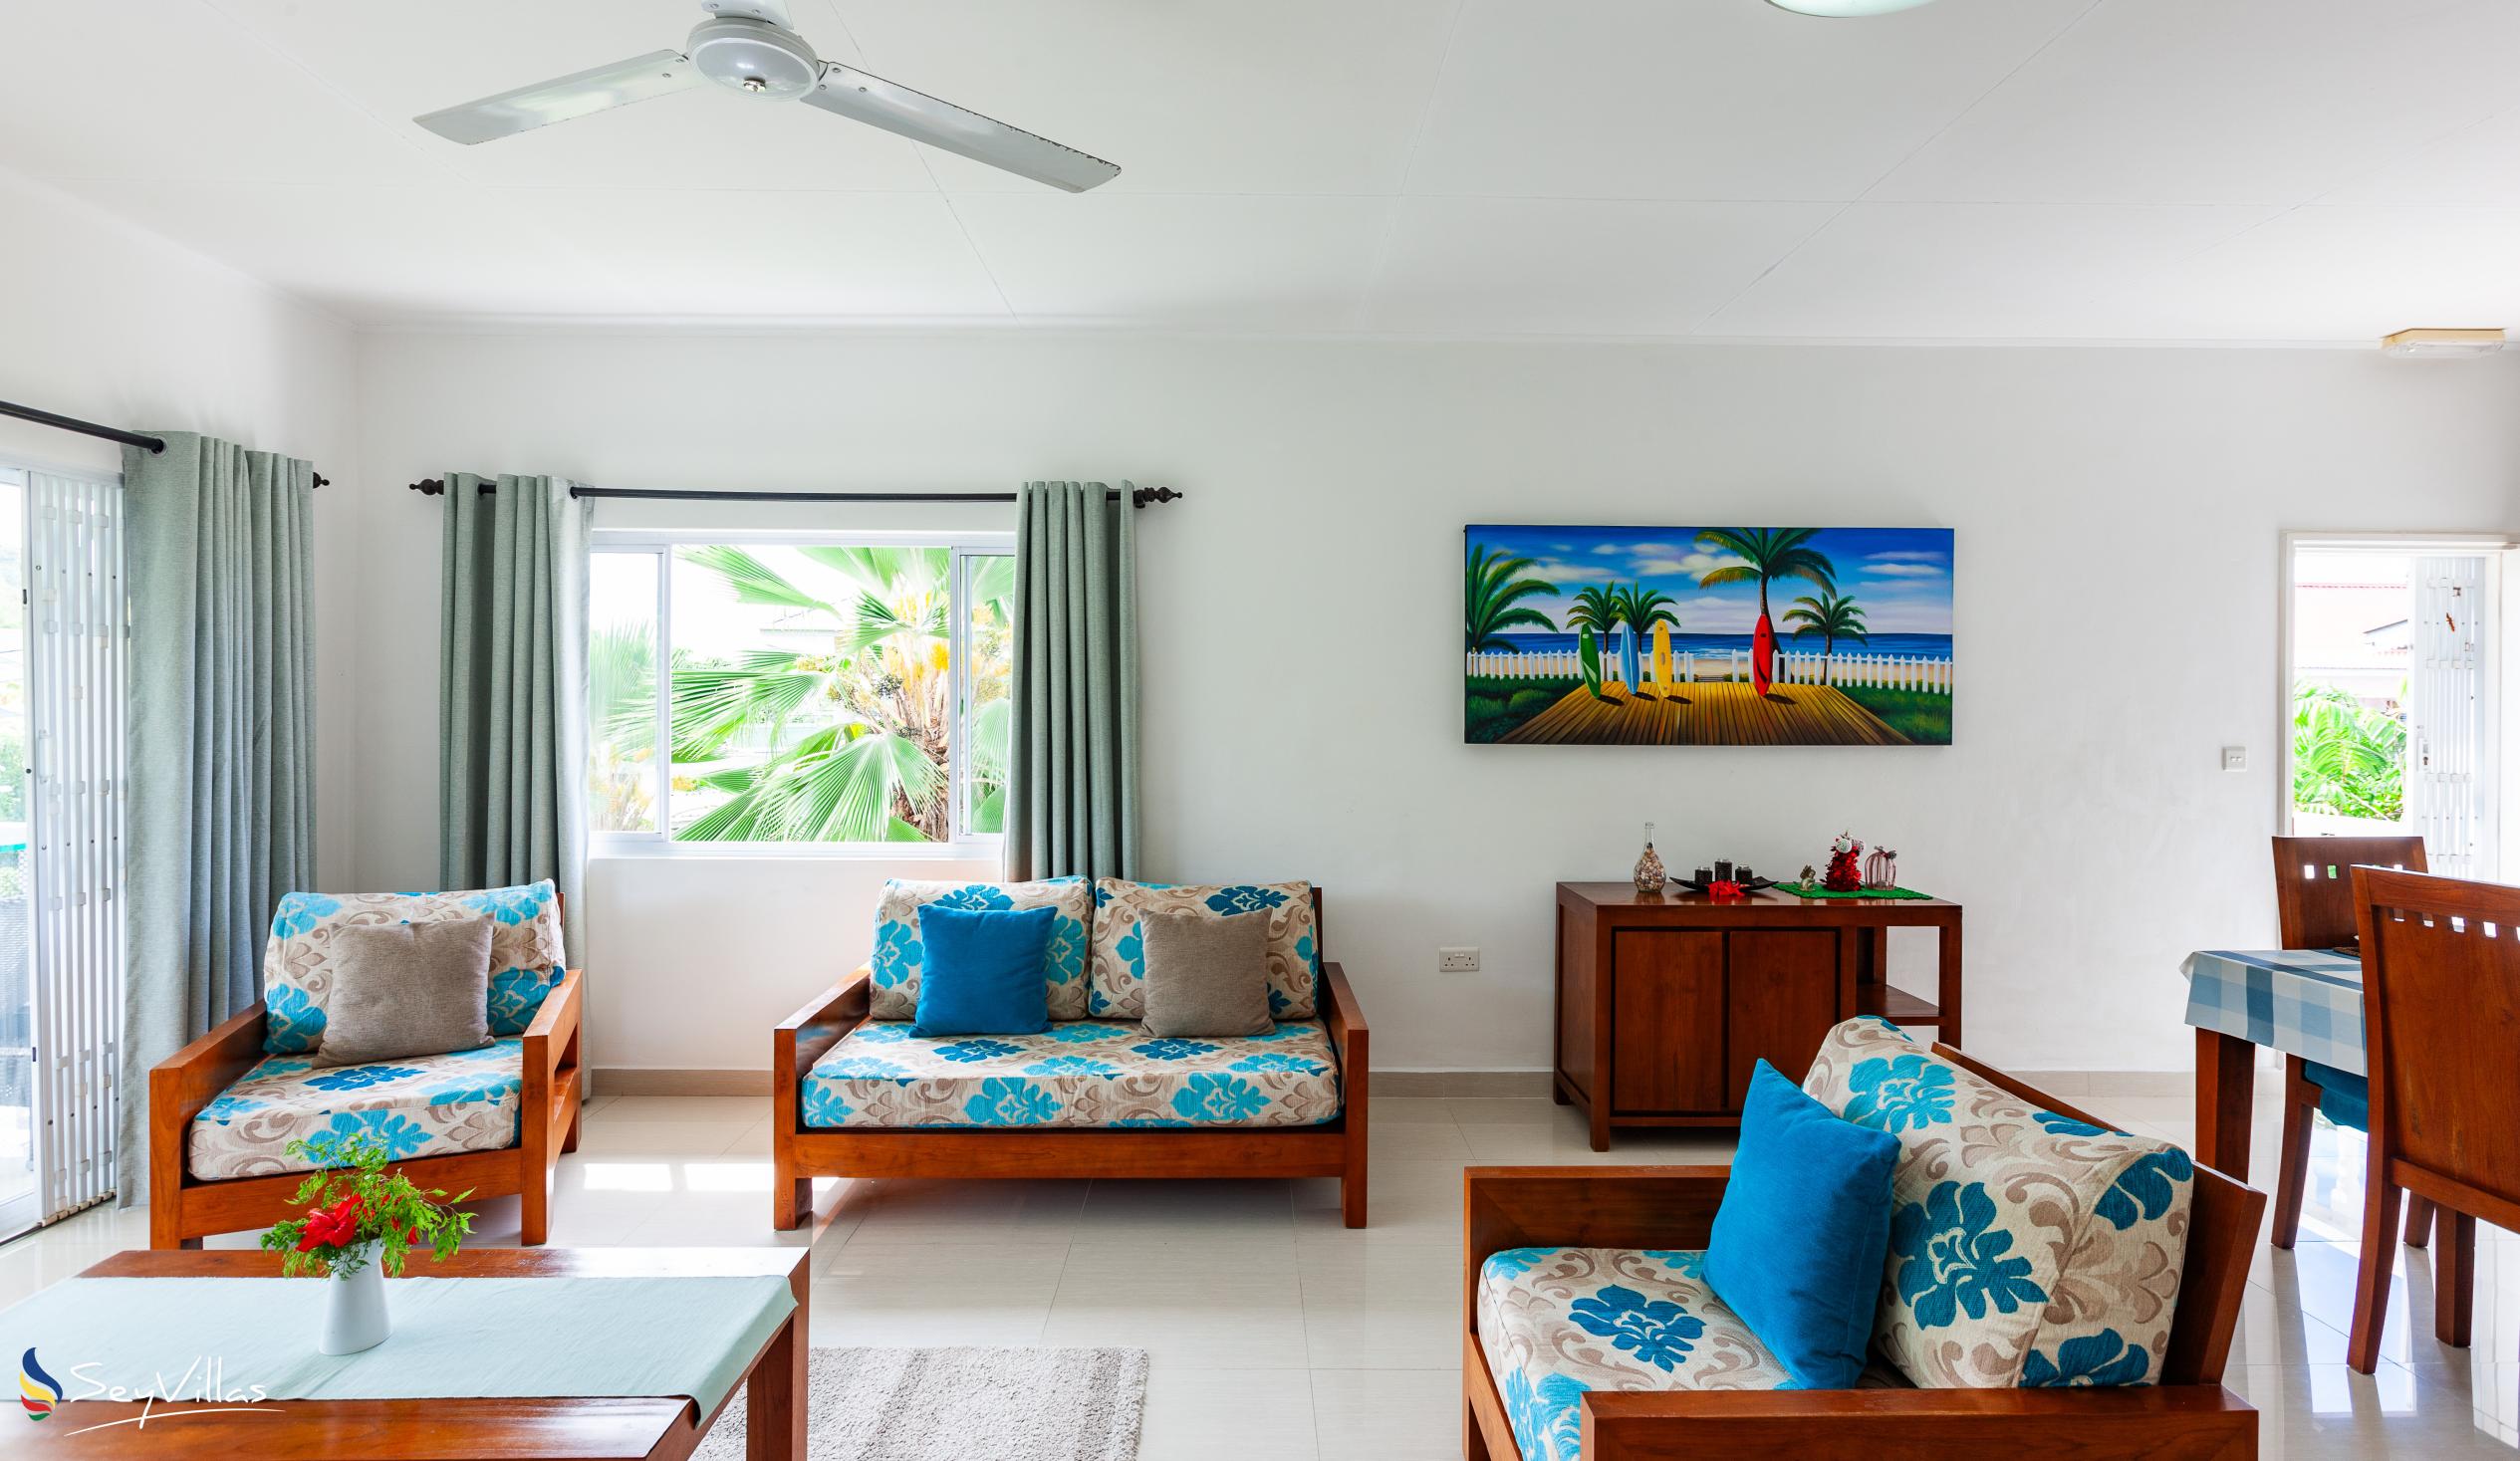 Foto 22: Casa Tara Villas - Appartamento con 2 camere - Praslin (Seychelles)